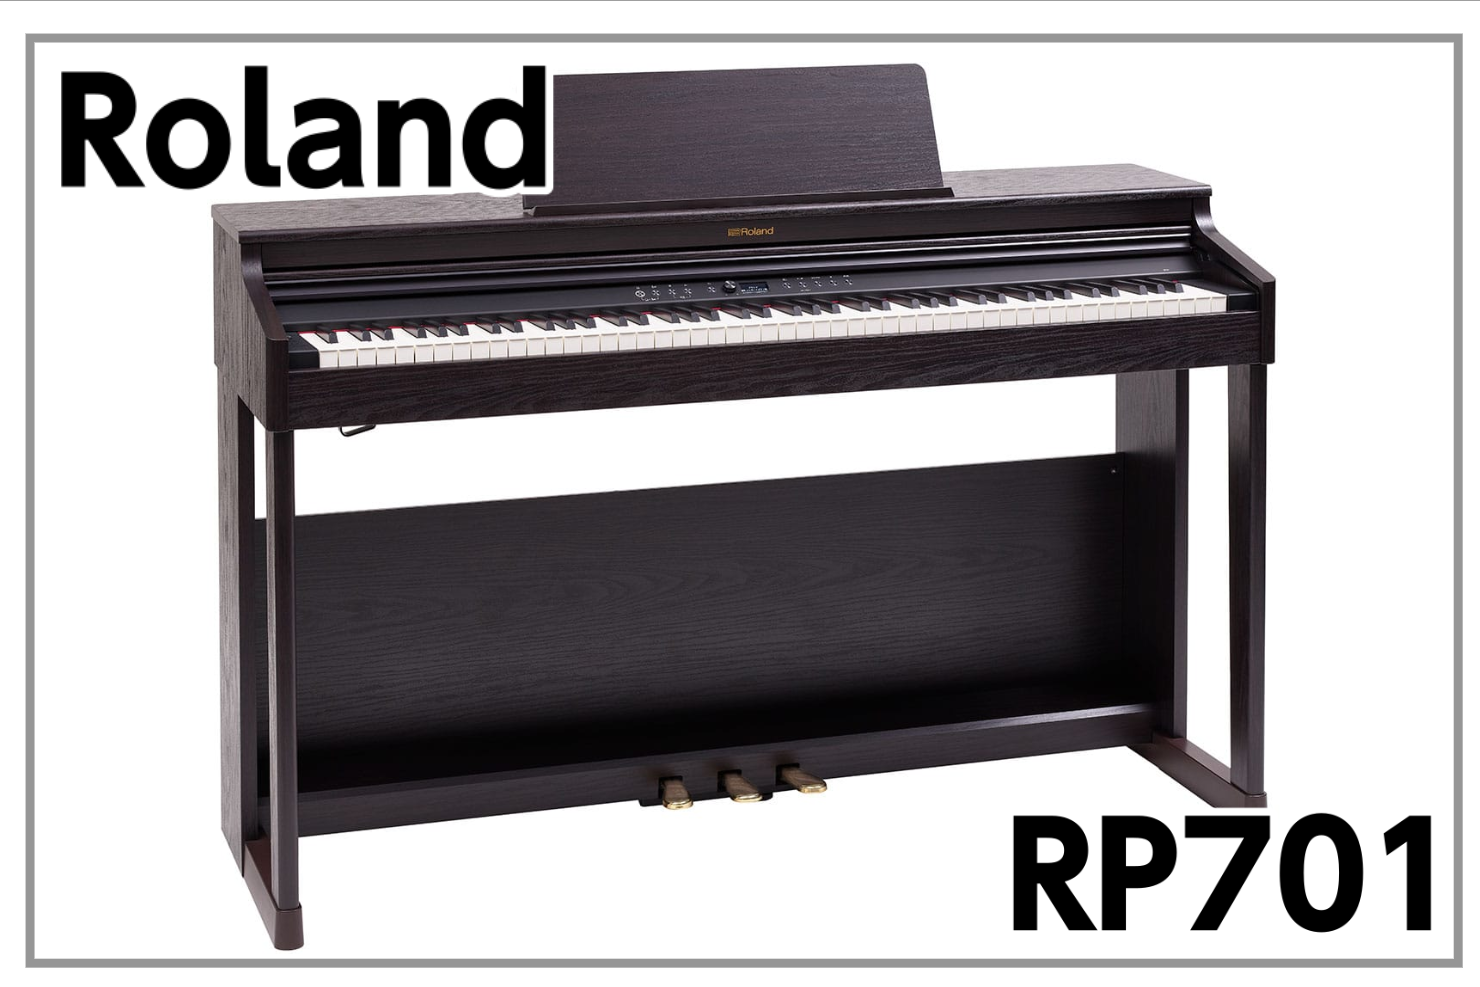 【新製品】Roland RP701 電子ピアノ入荷のご案内